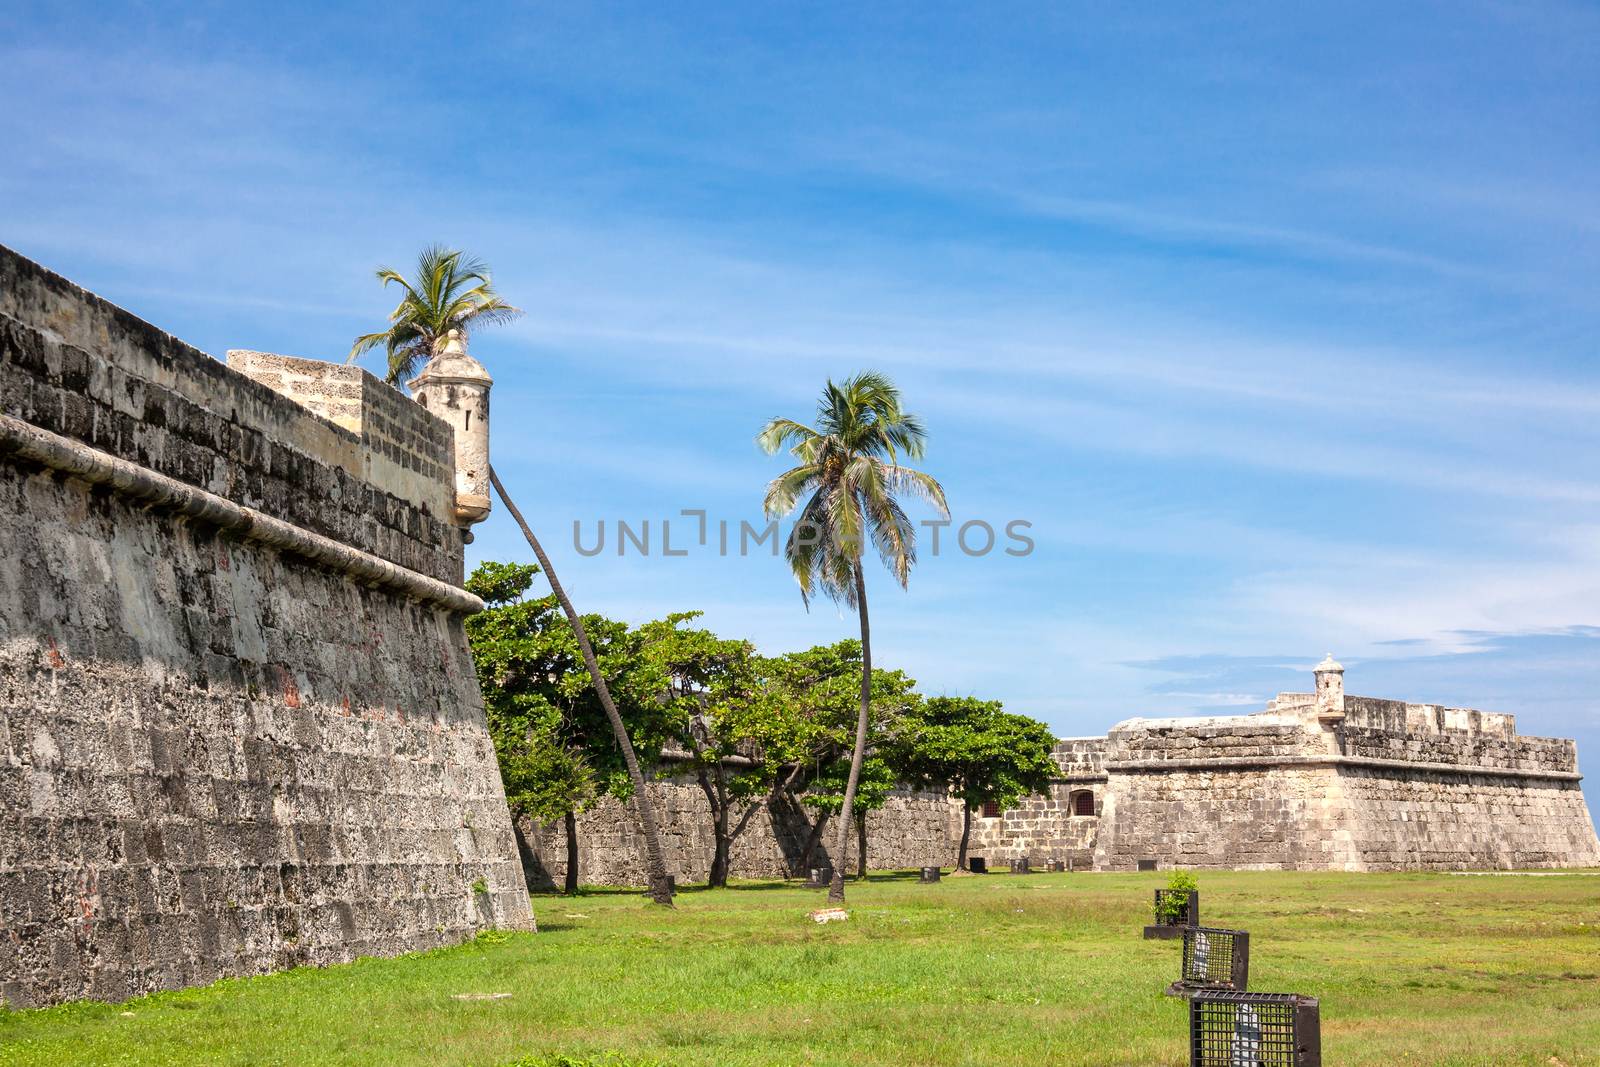 Wall of Cartagena de Indias